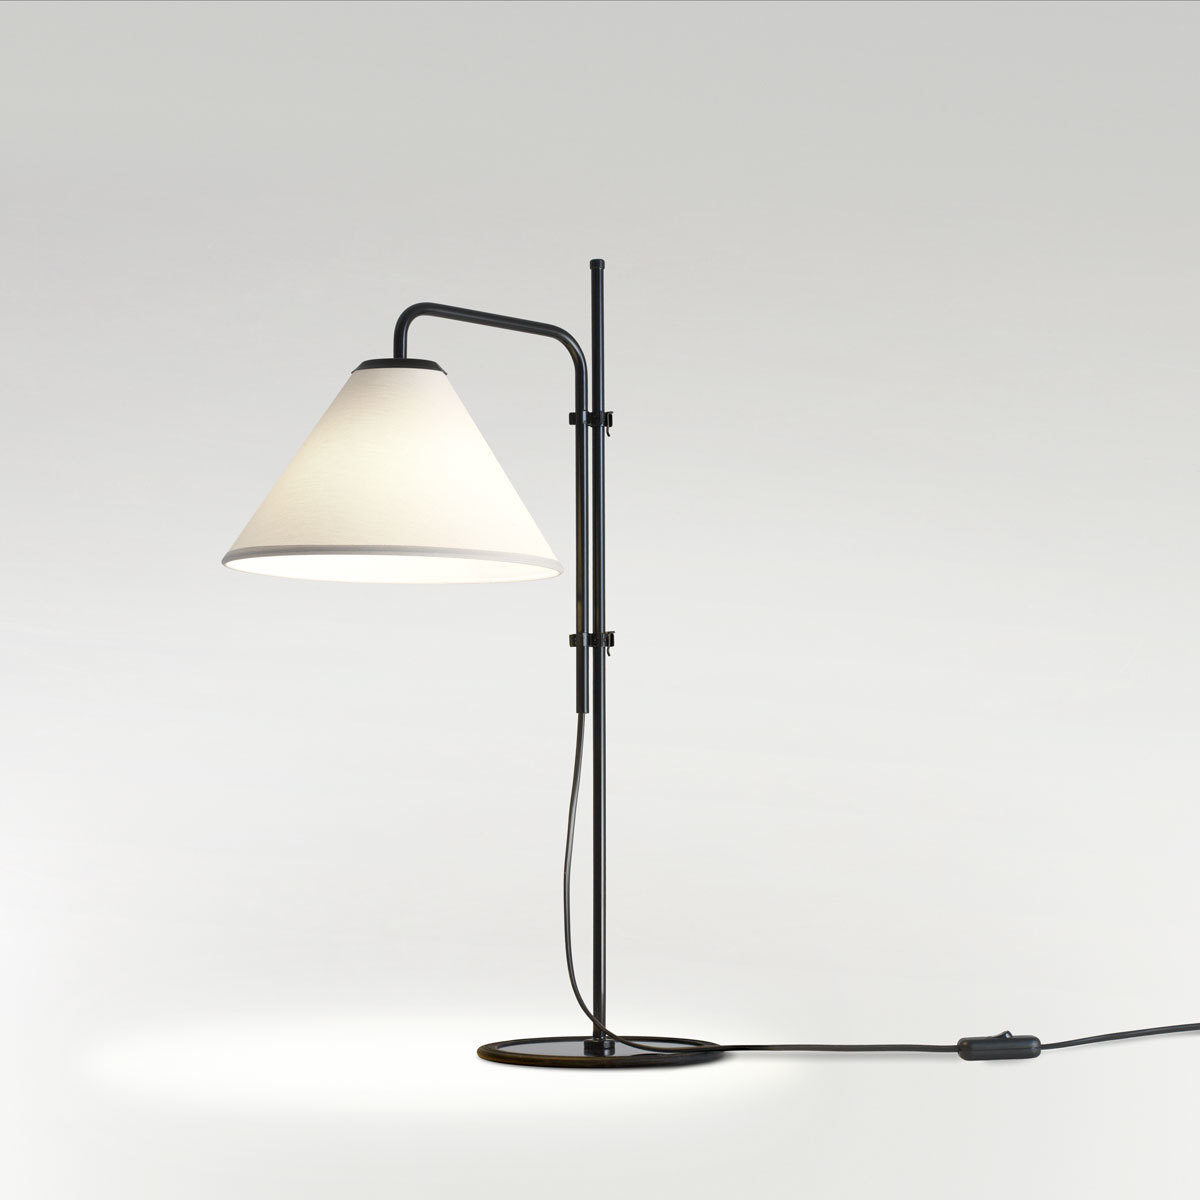 Funiculi 2018 Table Lamp